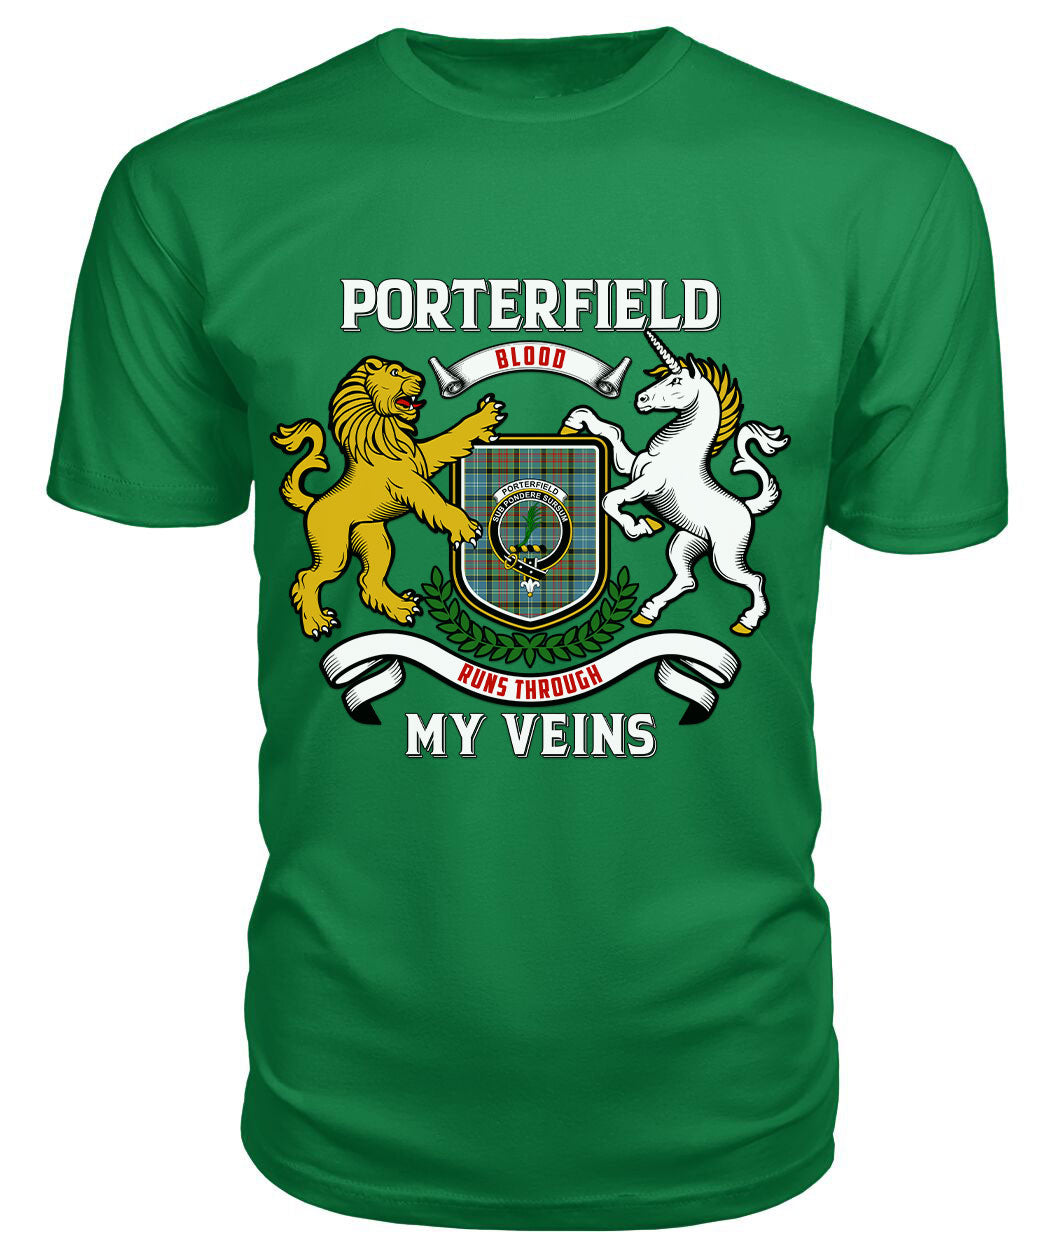 Porterfield Tartan Crest 2D T-shirt - Blood Runs Through My Veins Style